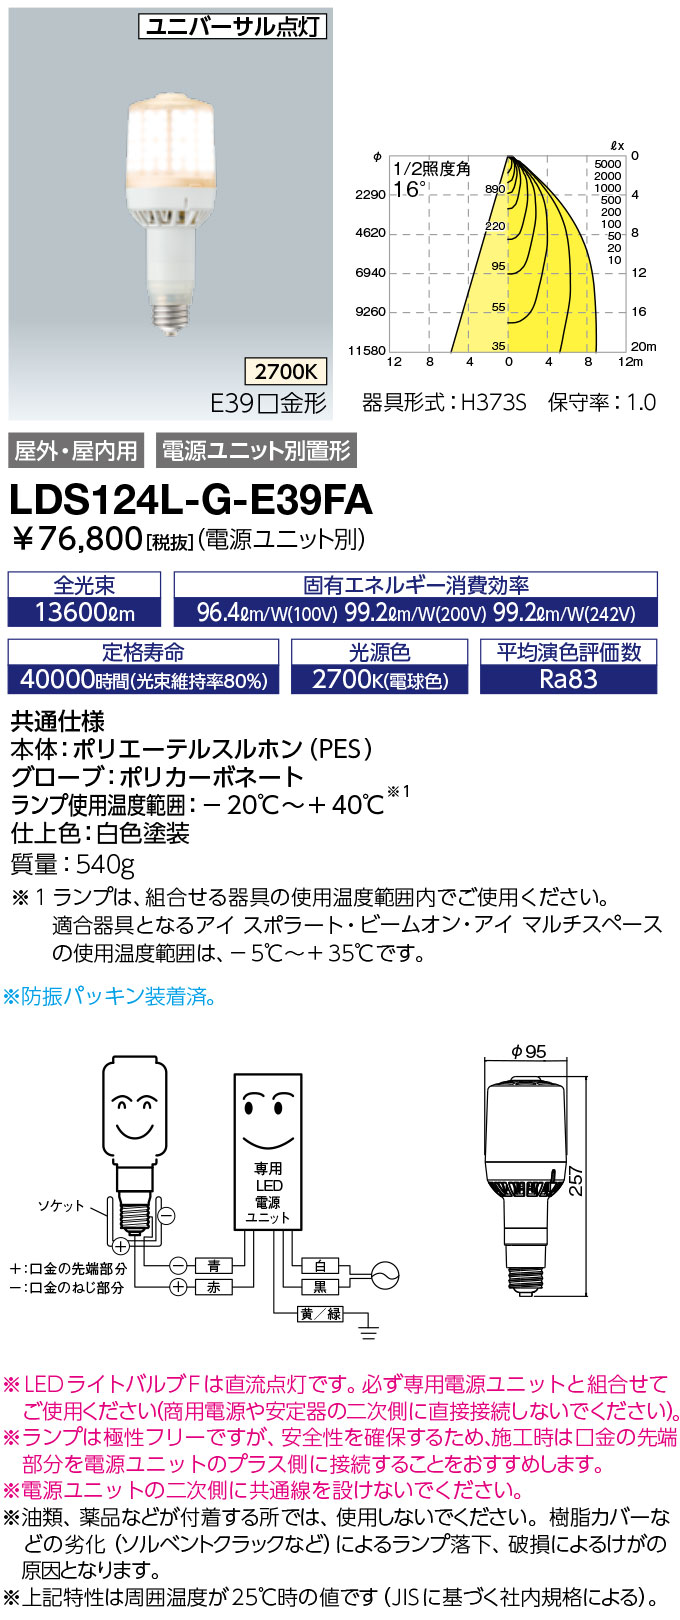 LDS124L-G-E39FA